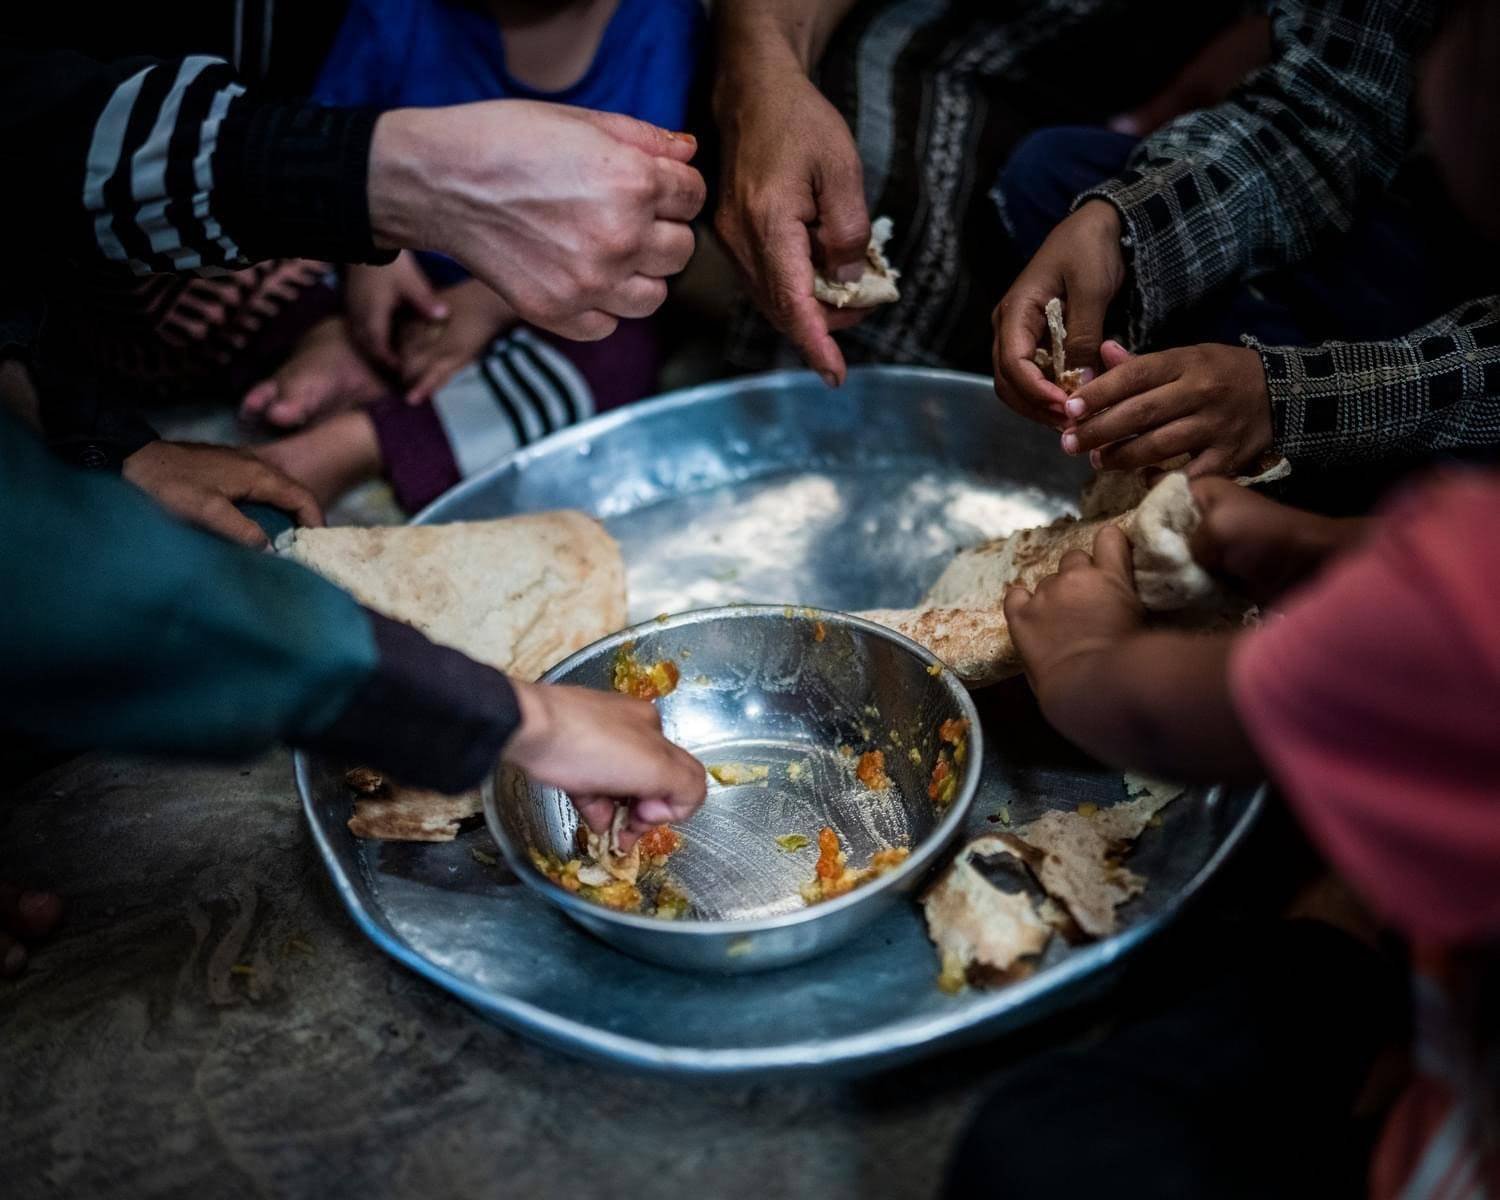 اللحوم والفواكه غائبة عن الوجبات.. الجوع يهدد نصف اليمنيين في مناطق سيطرة الحوثيين